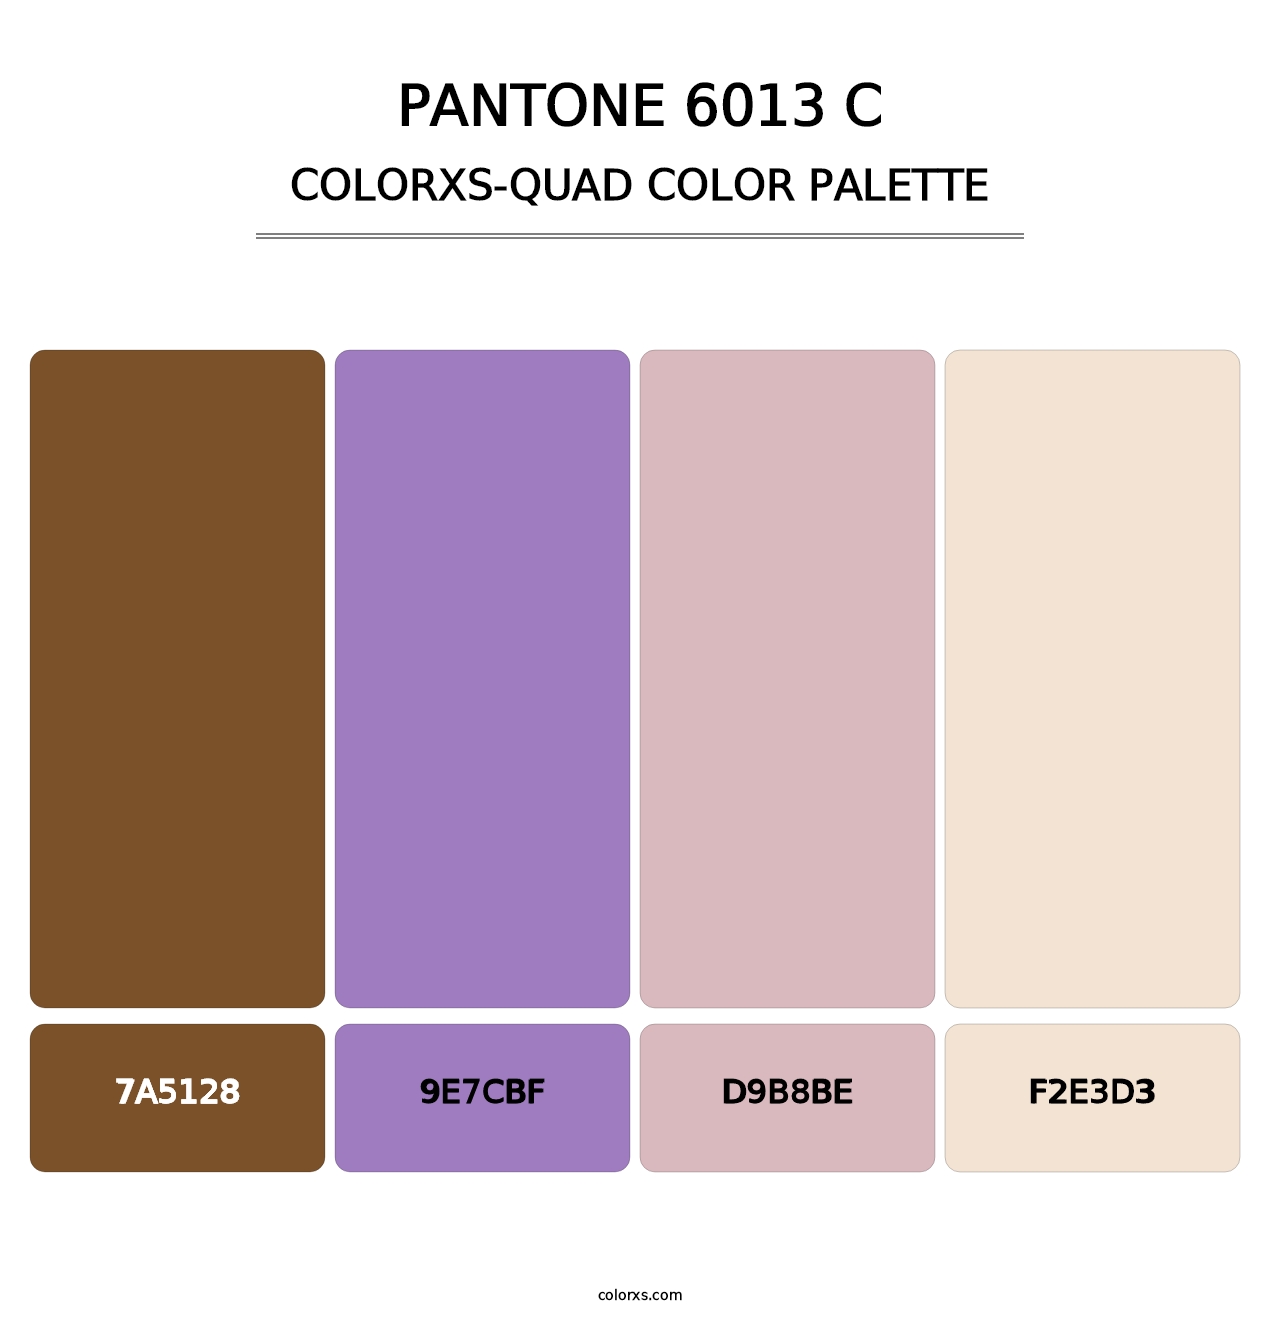 PANTONE 6013 C - Colorxs Quad Palette